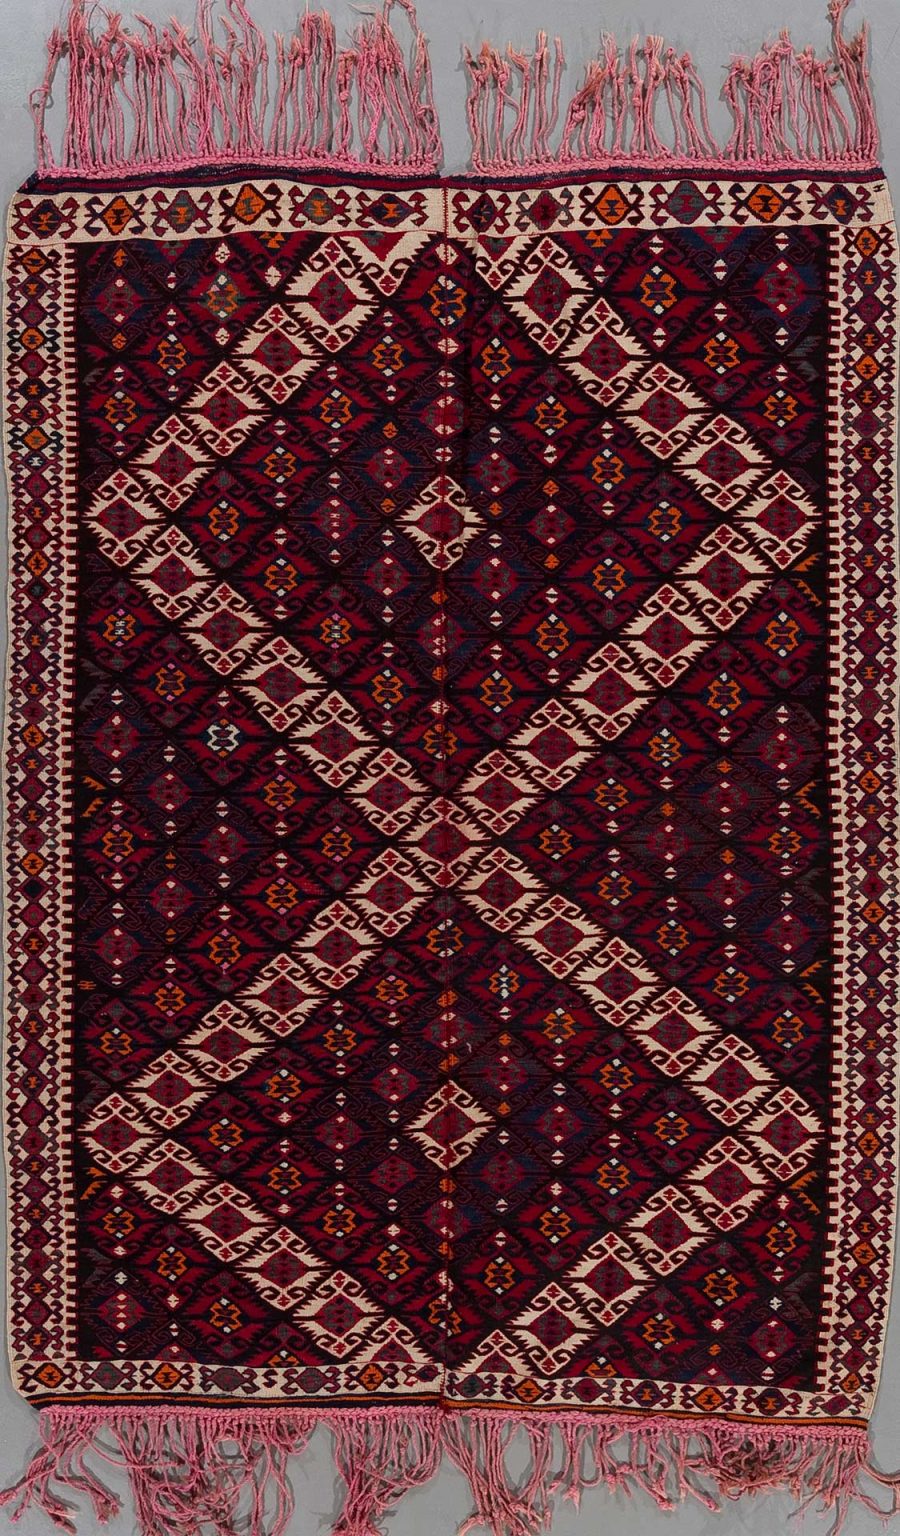 Traditioneller handgewebter Teppich mit komplexen geometrischen Mustern in Rot-, Schwarz-, Weiß- und Orangetönen, Fransen an beiden Enden